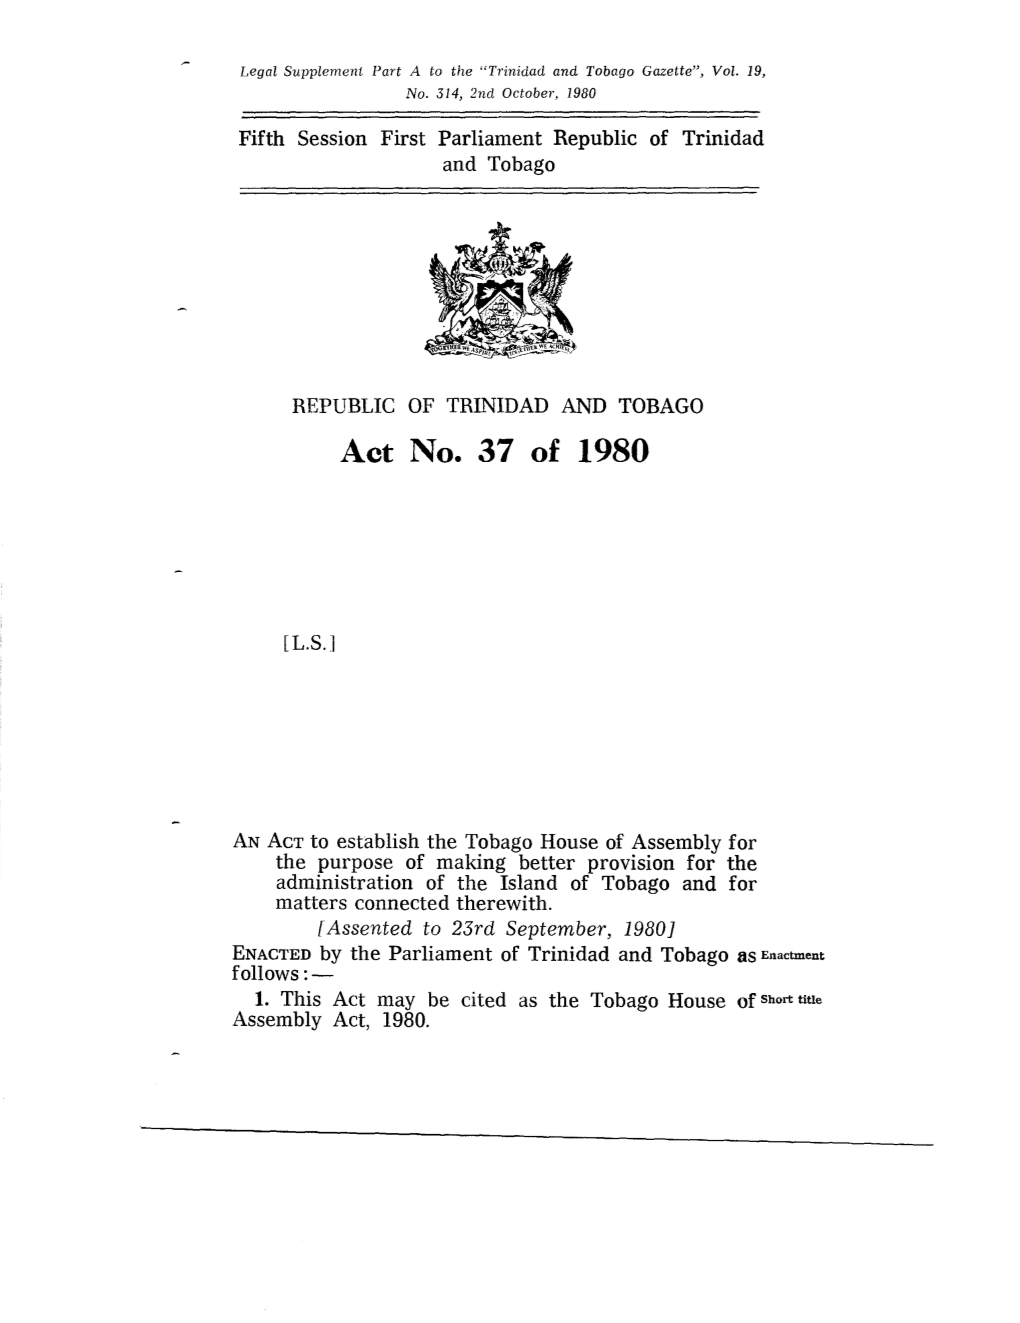 Act No. 37 of 1980